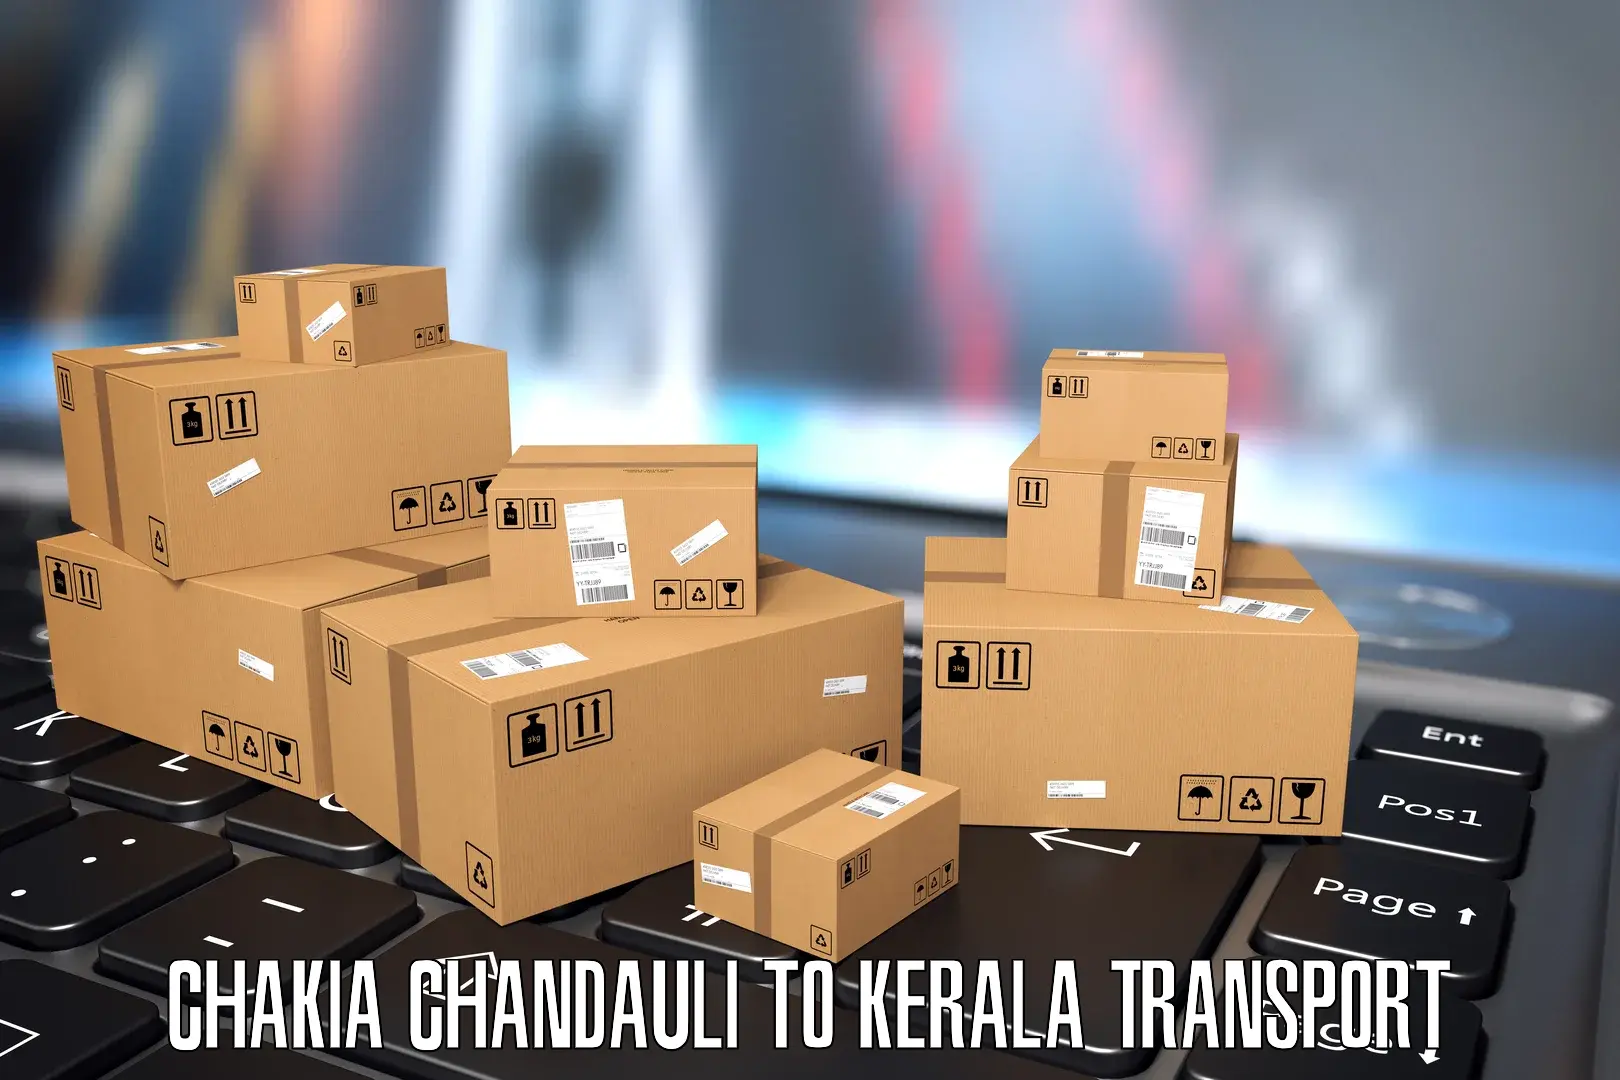 Transport in sharing Chakia Chandauli to Ponekkara